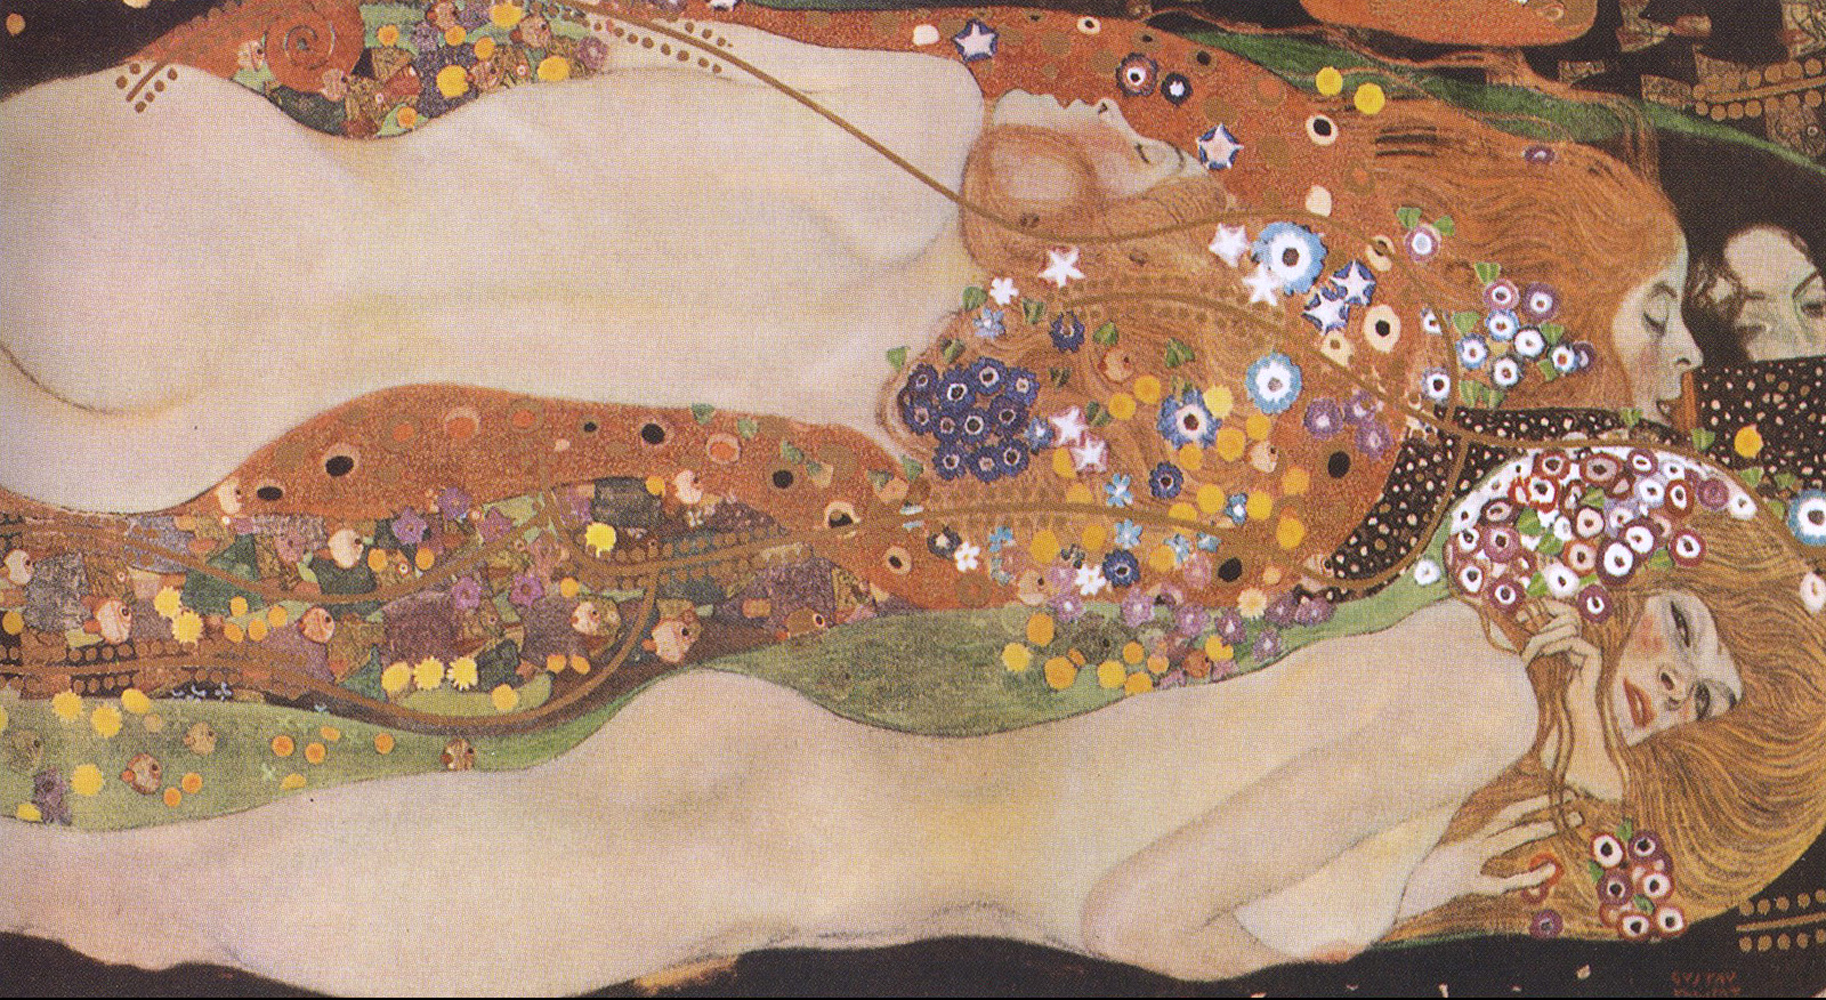 Slangen II by Gustav Klimt - 1907 - 80 x 145 cm 